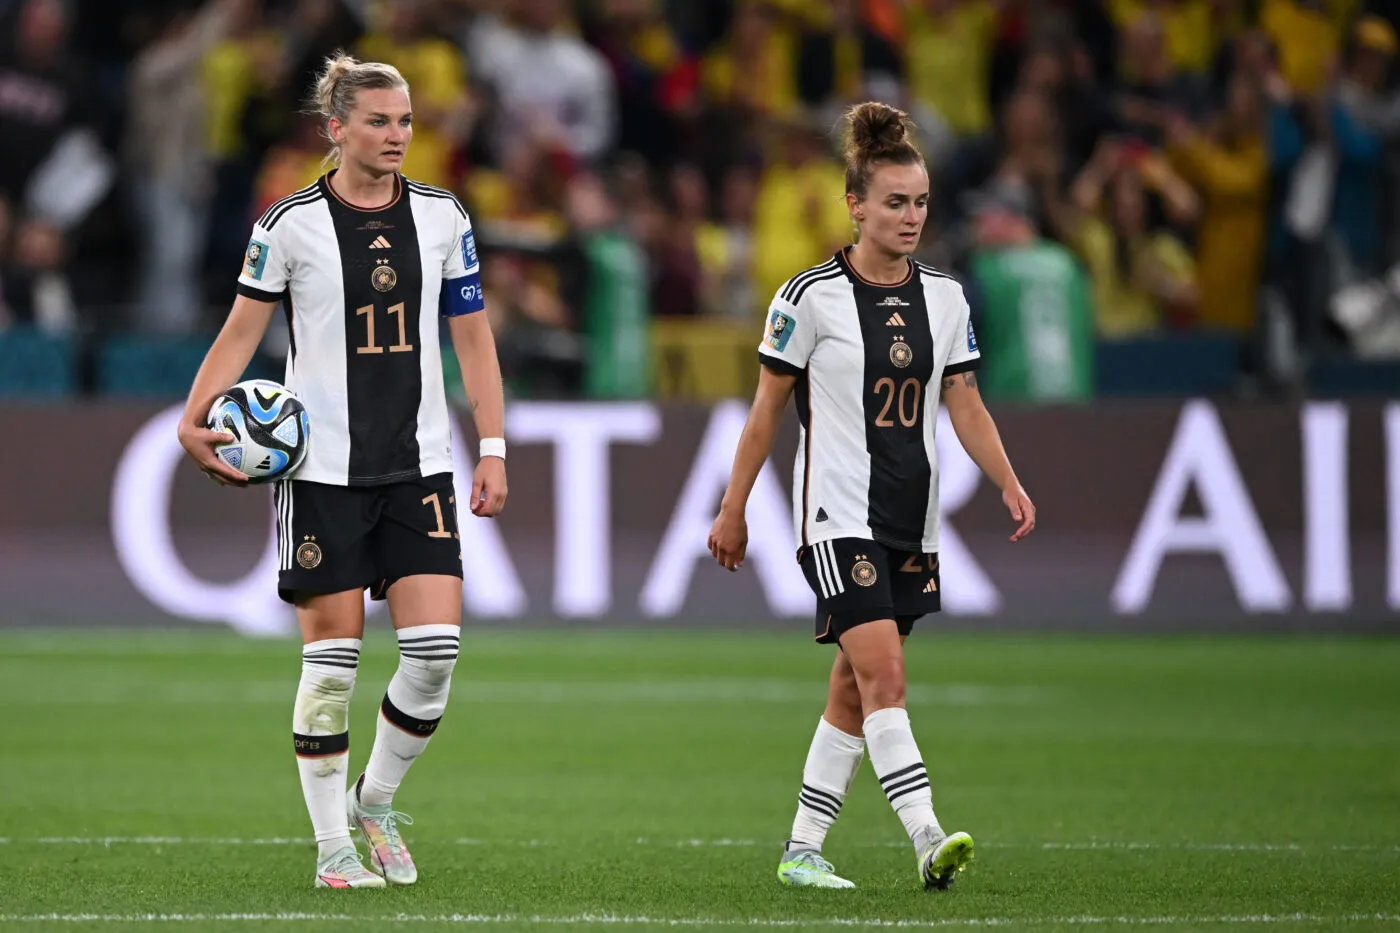 Pronostic Corée du Sud Allemagne : Analyse, cotes et prono du match de la Coupe du monde féminine